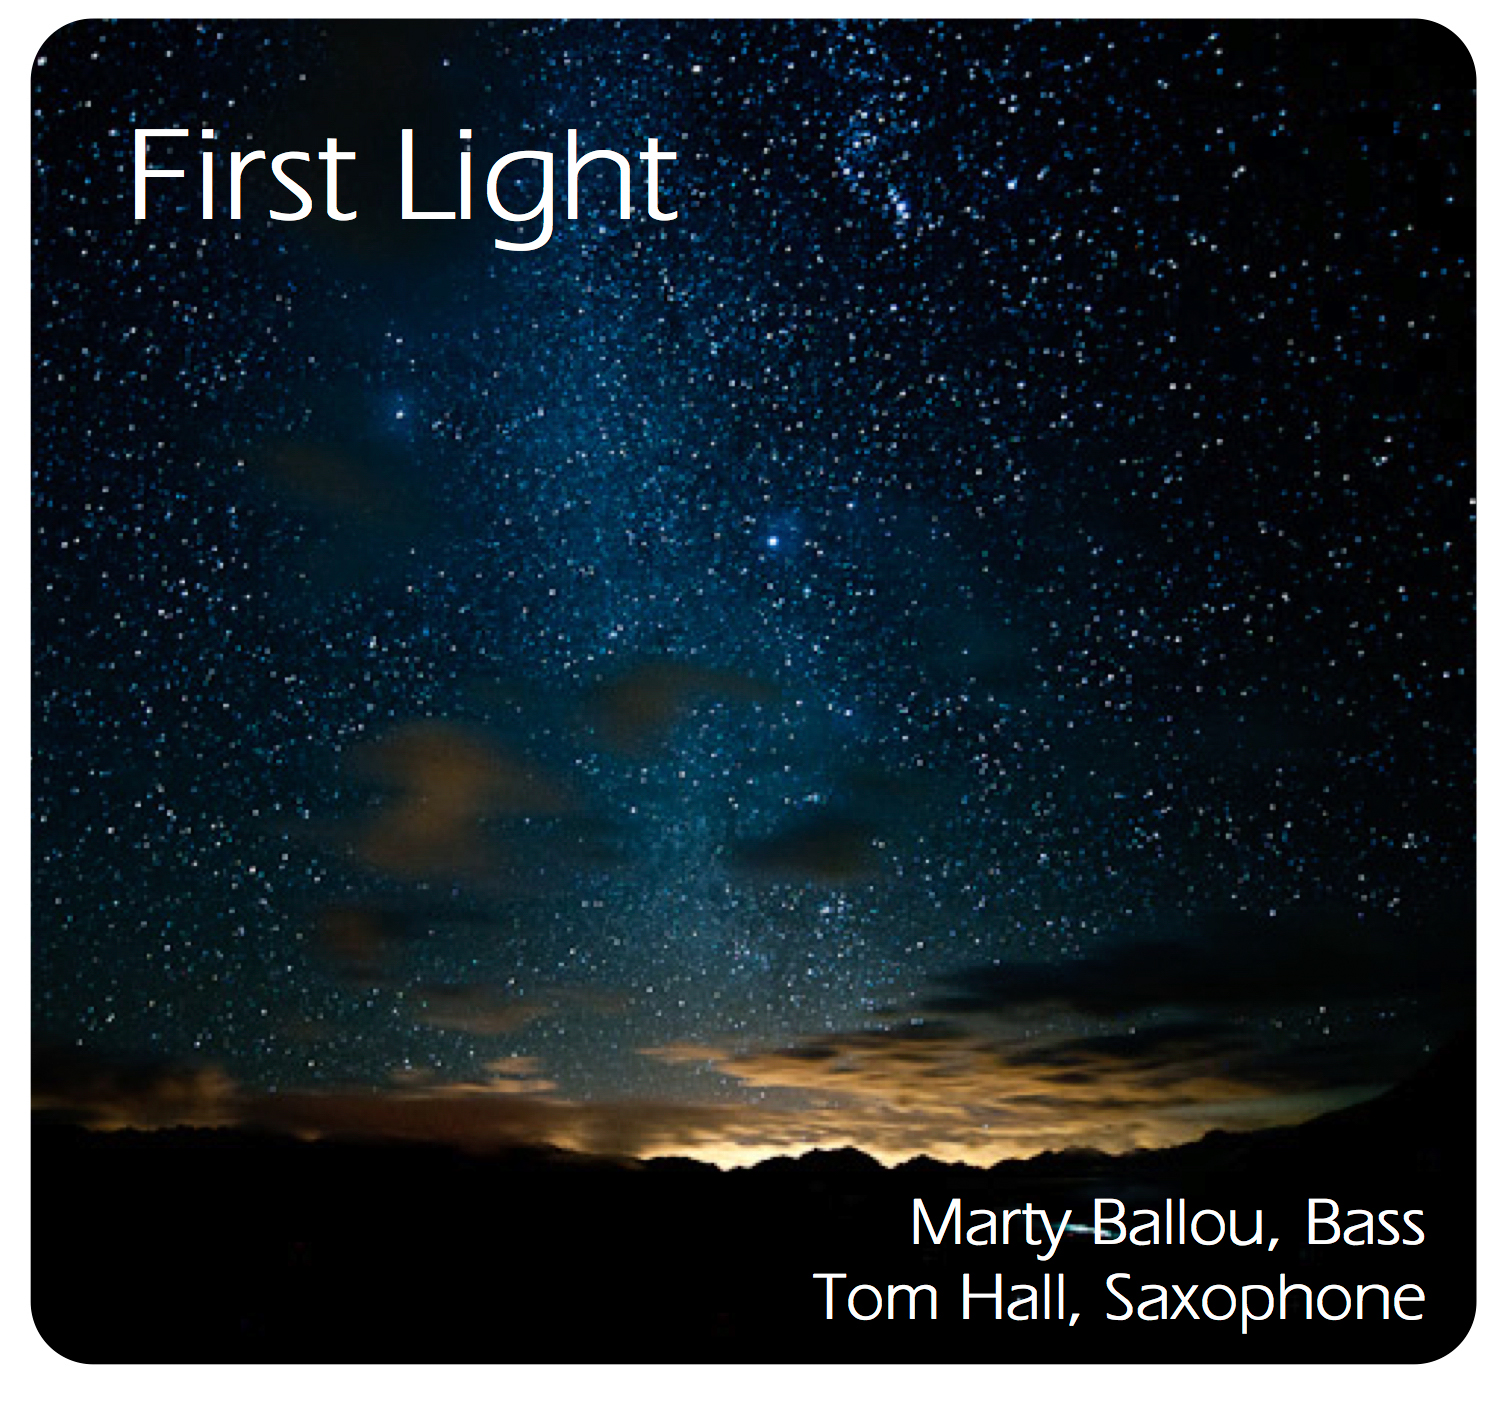  Tom Hall - www.freeimprovisation.com 